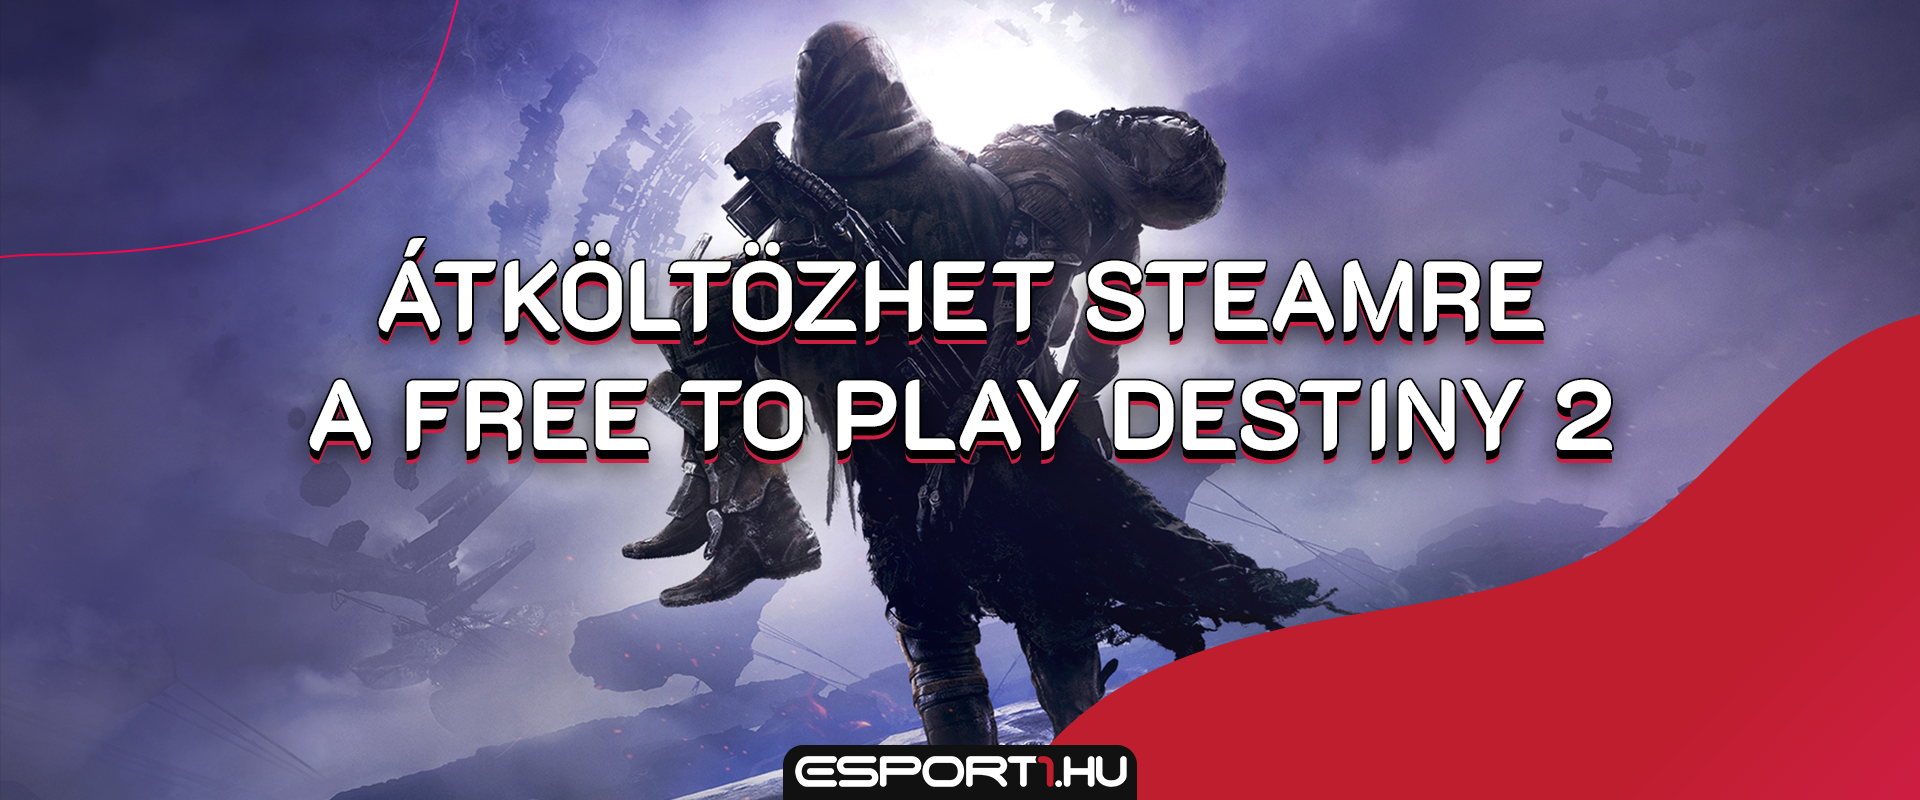 Új néven, free-to-play címként érkezhet a Destiny 2 Steamre!